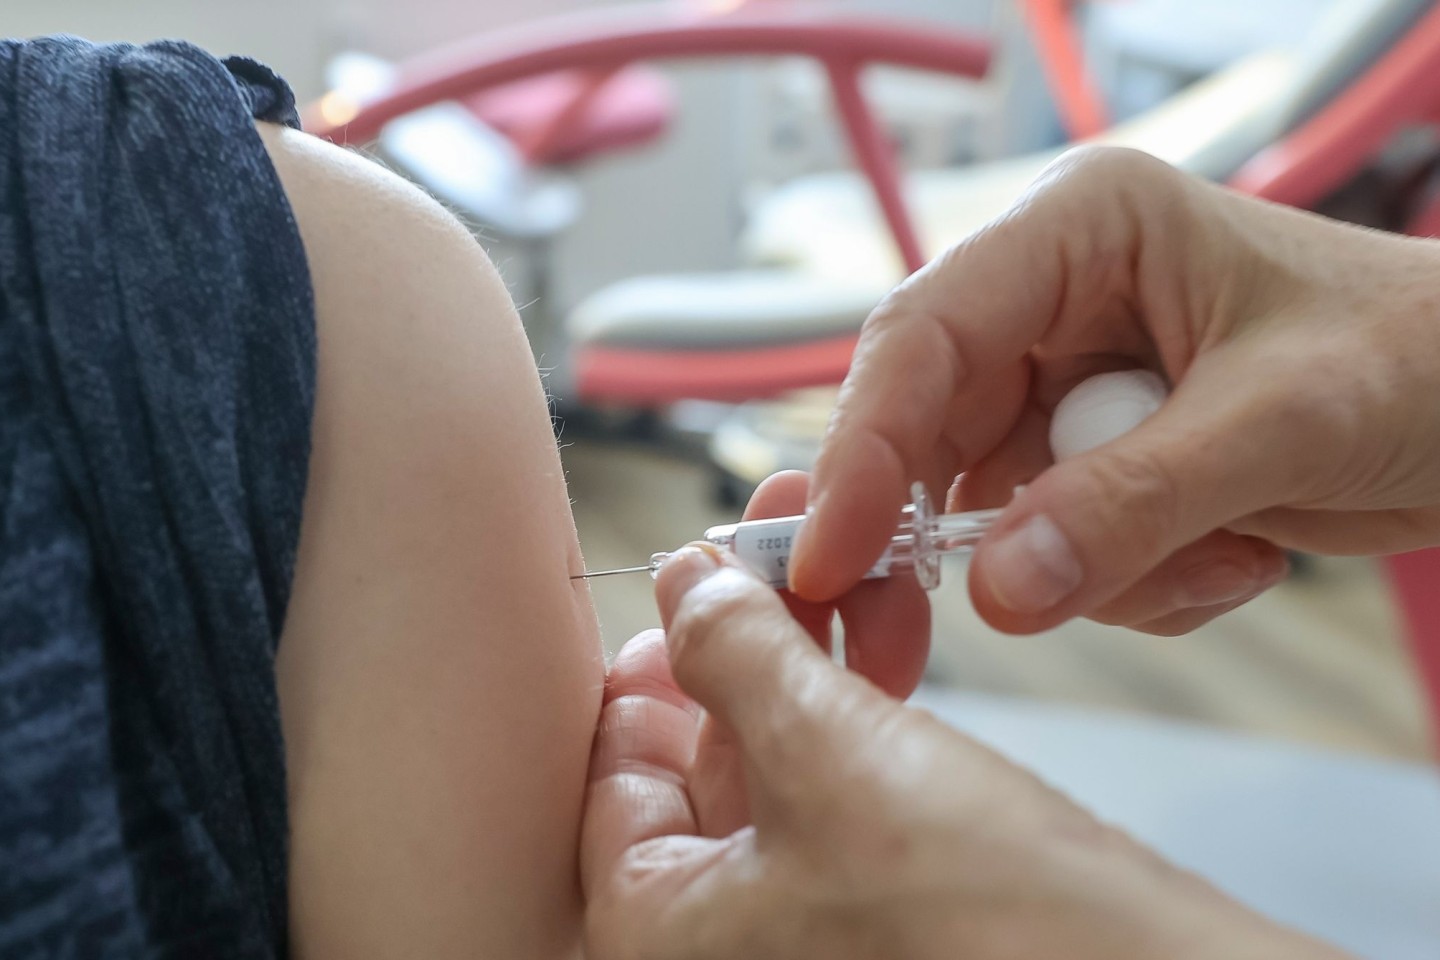 Empfohlen wird die jährliche Grippeimpfung für alle Schwangeren ab dem 2. Trimenon.